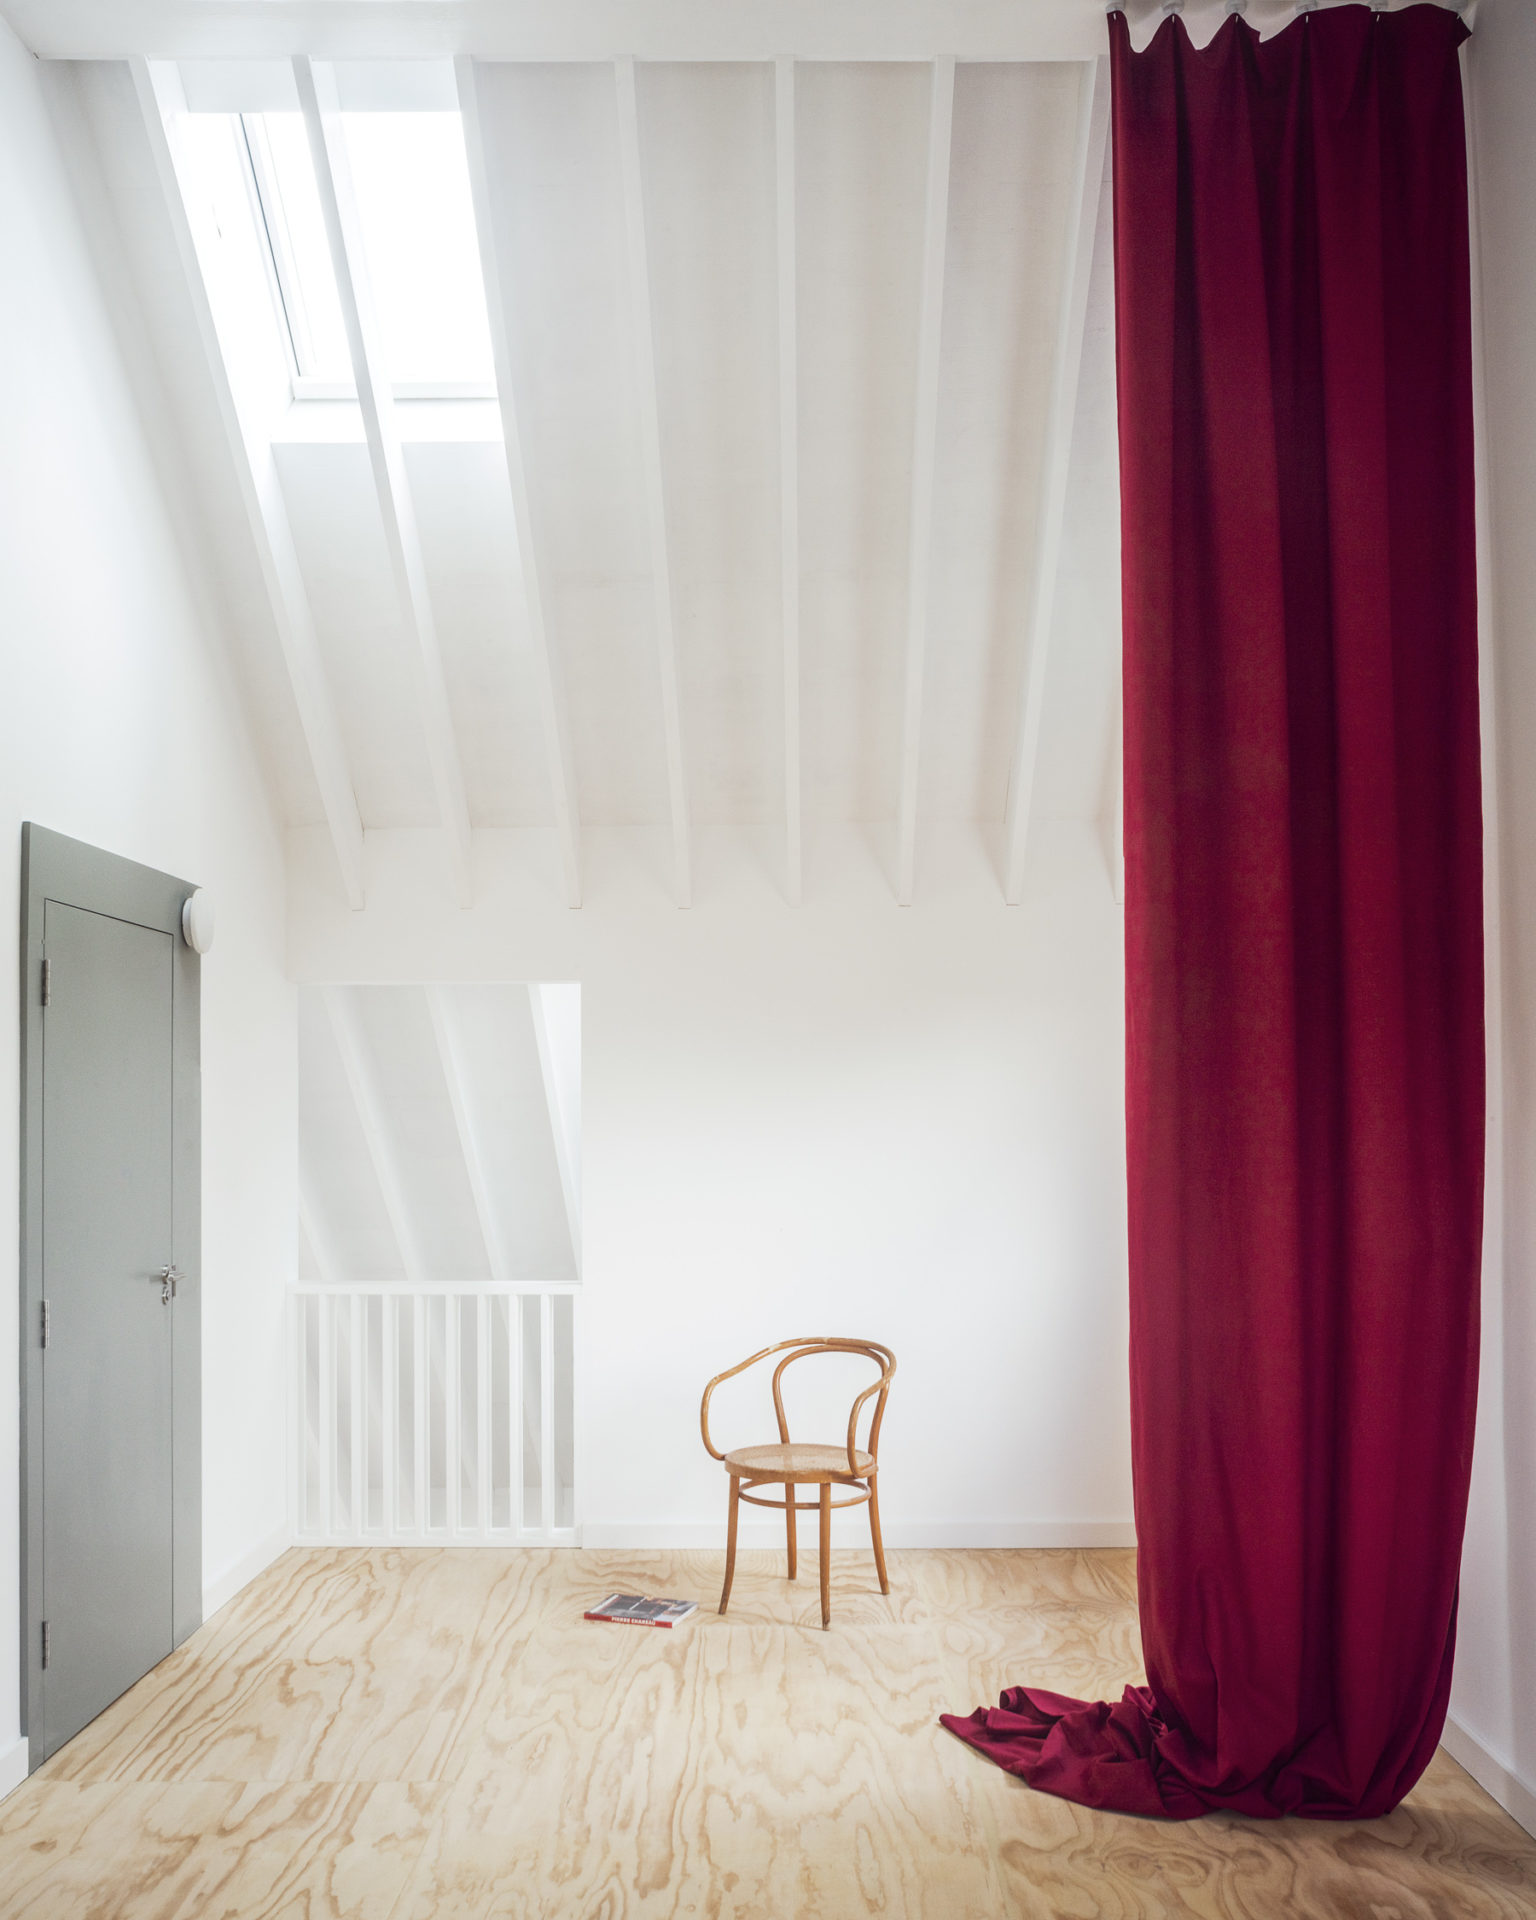 Photographie d'une chaise dans un intérieur blanc avec un rideau rouge en premier plan